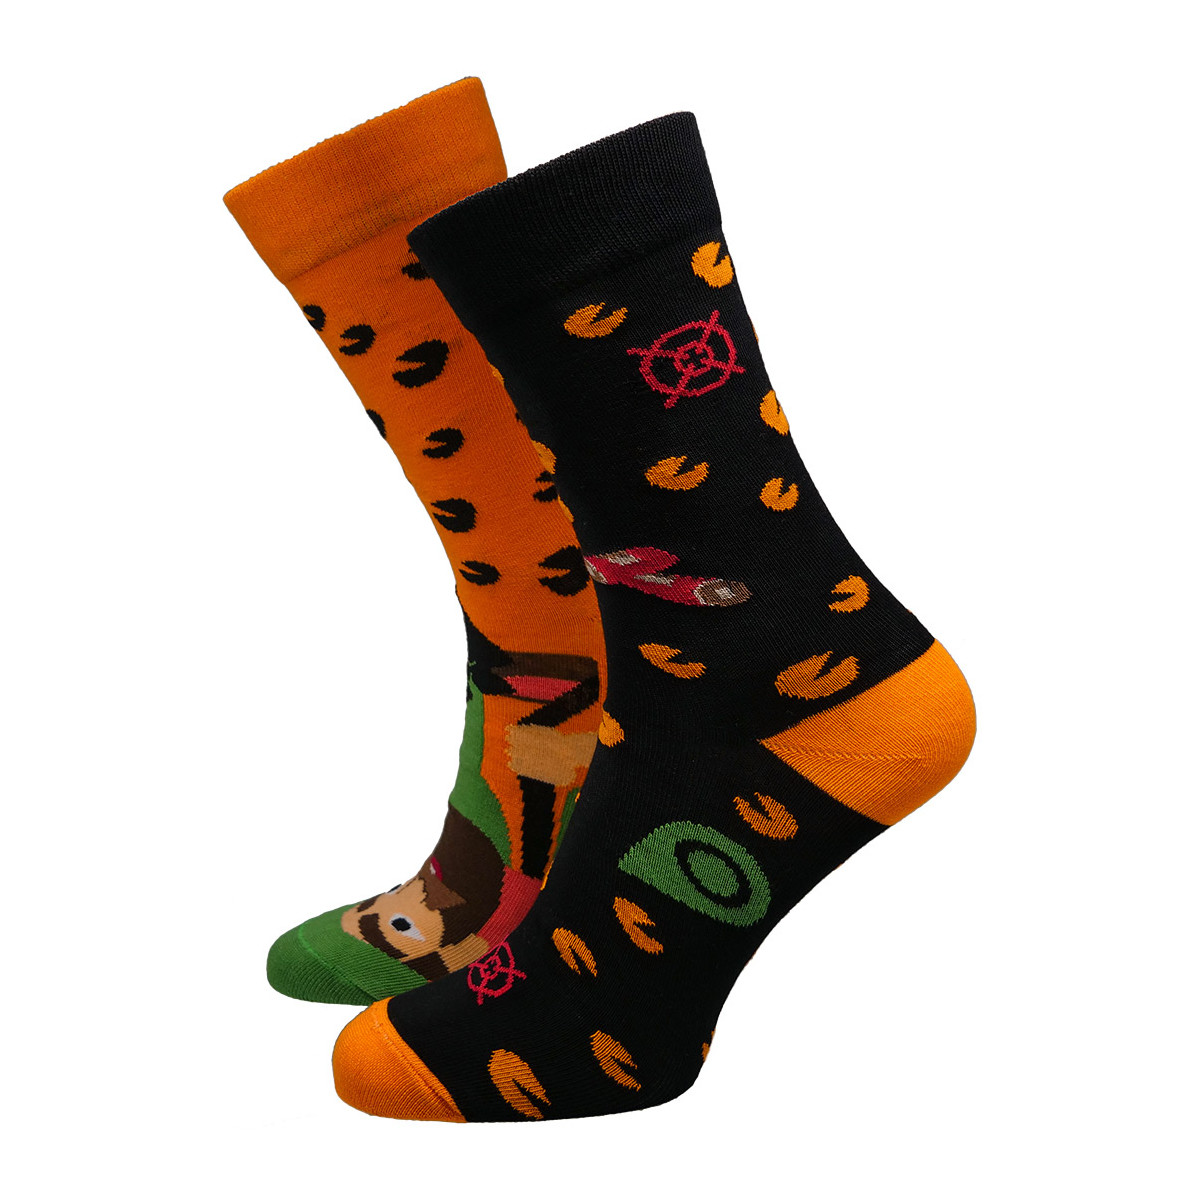 Doplňky  Doplňky k obuvi Hesty Socks unisex ponožky Hunter oranžovo-černé Černá/Oranžová